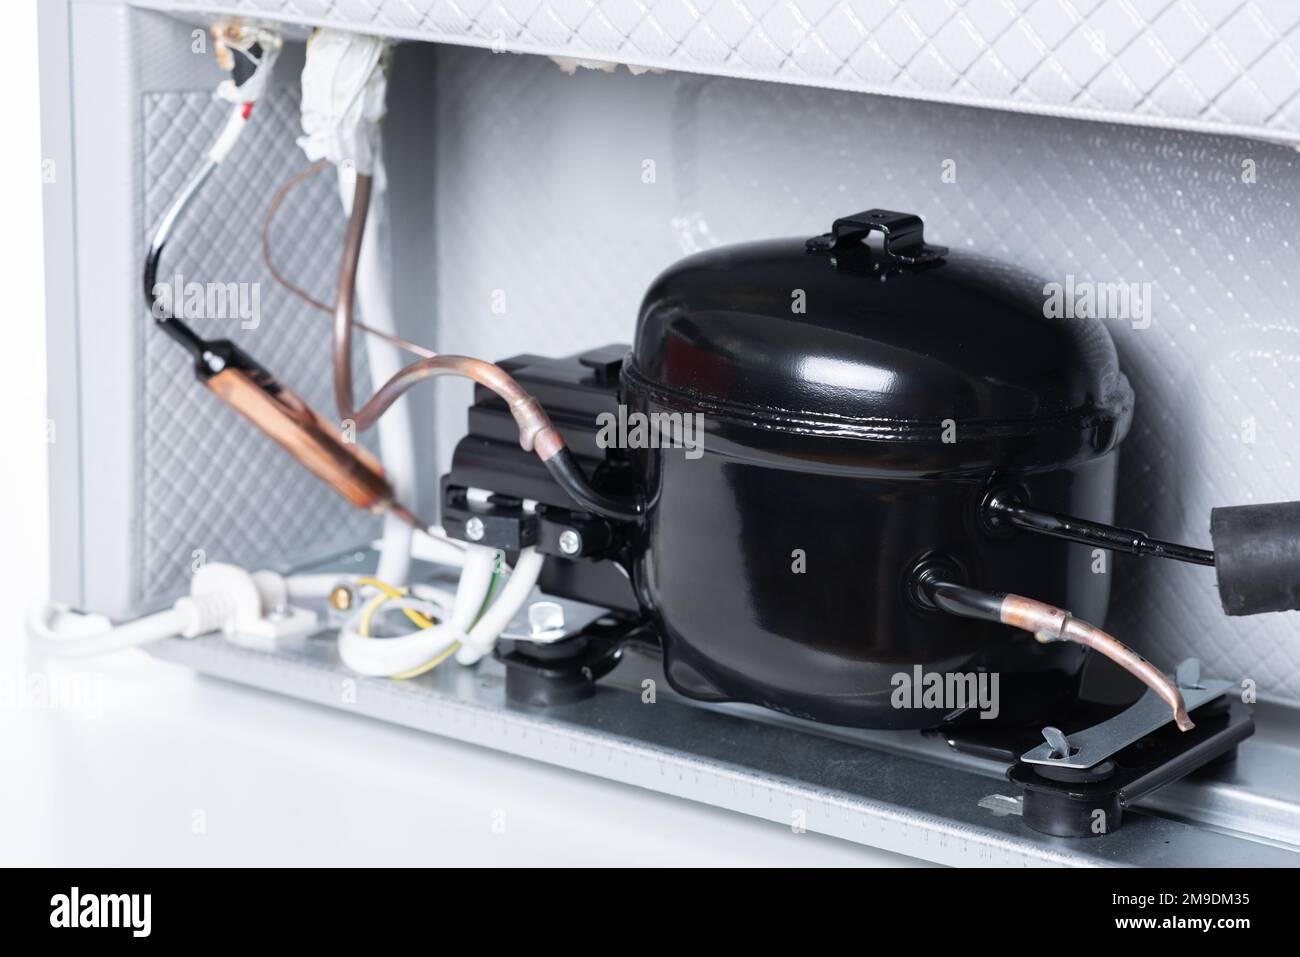 https://c8.alamy.com/comp/2M9DM35/close-up-refrigerator-compressor-mounted-on-the-minibar-2M9DM35.jpg